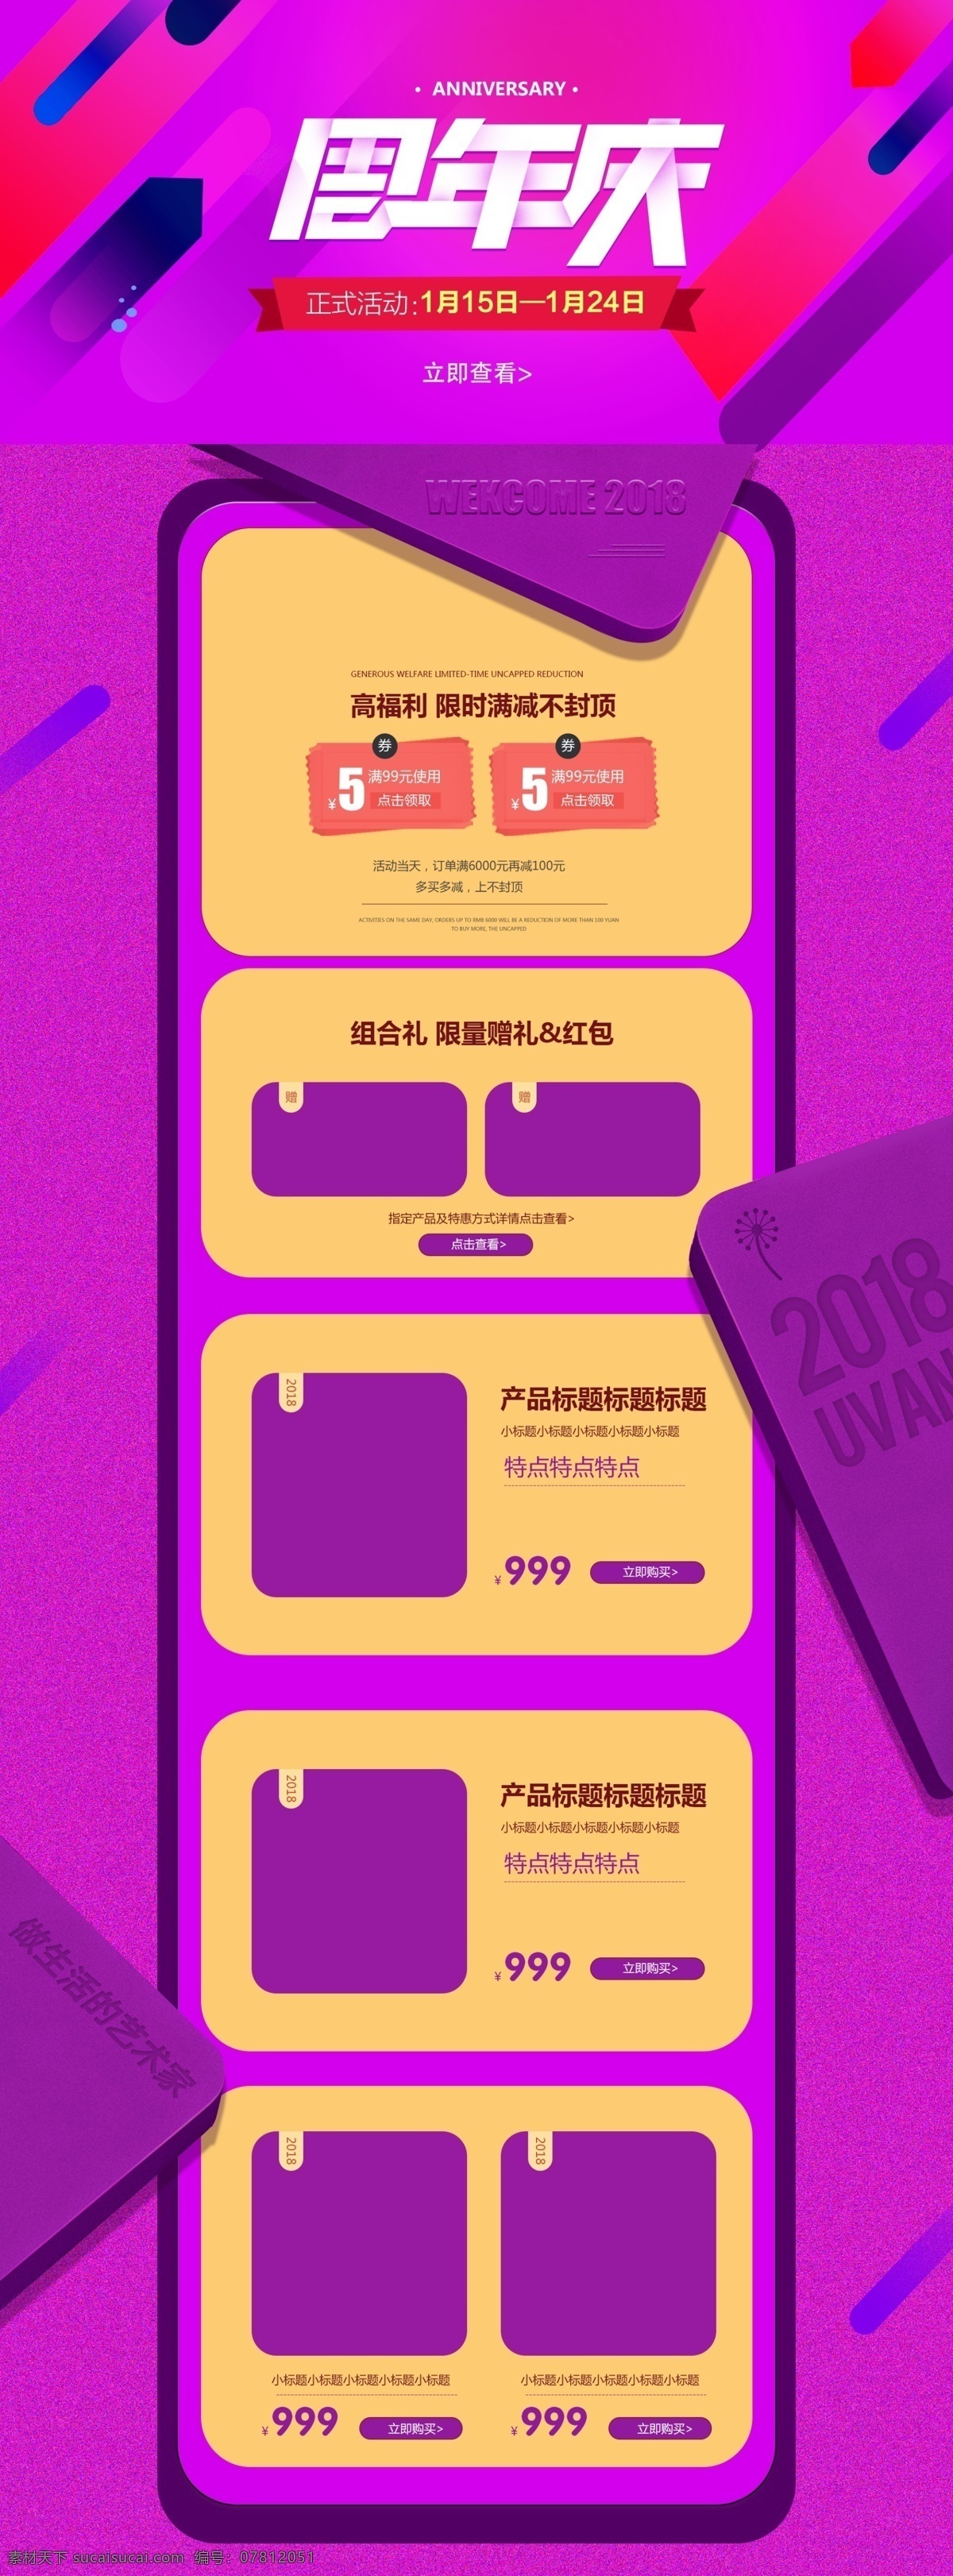 2018 年 周年庆 活动 首页 模板 2018年 产品排版 活动氛围 首页设计 优惠券 源文档 紫色背景